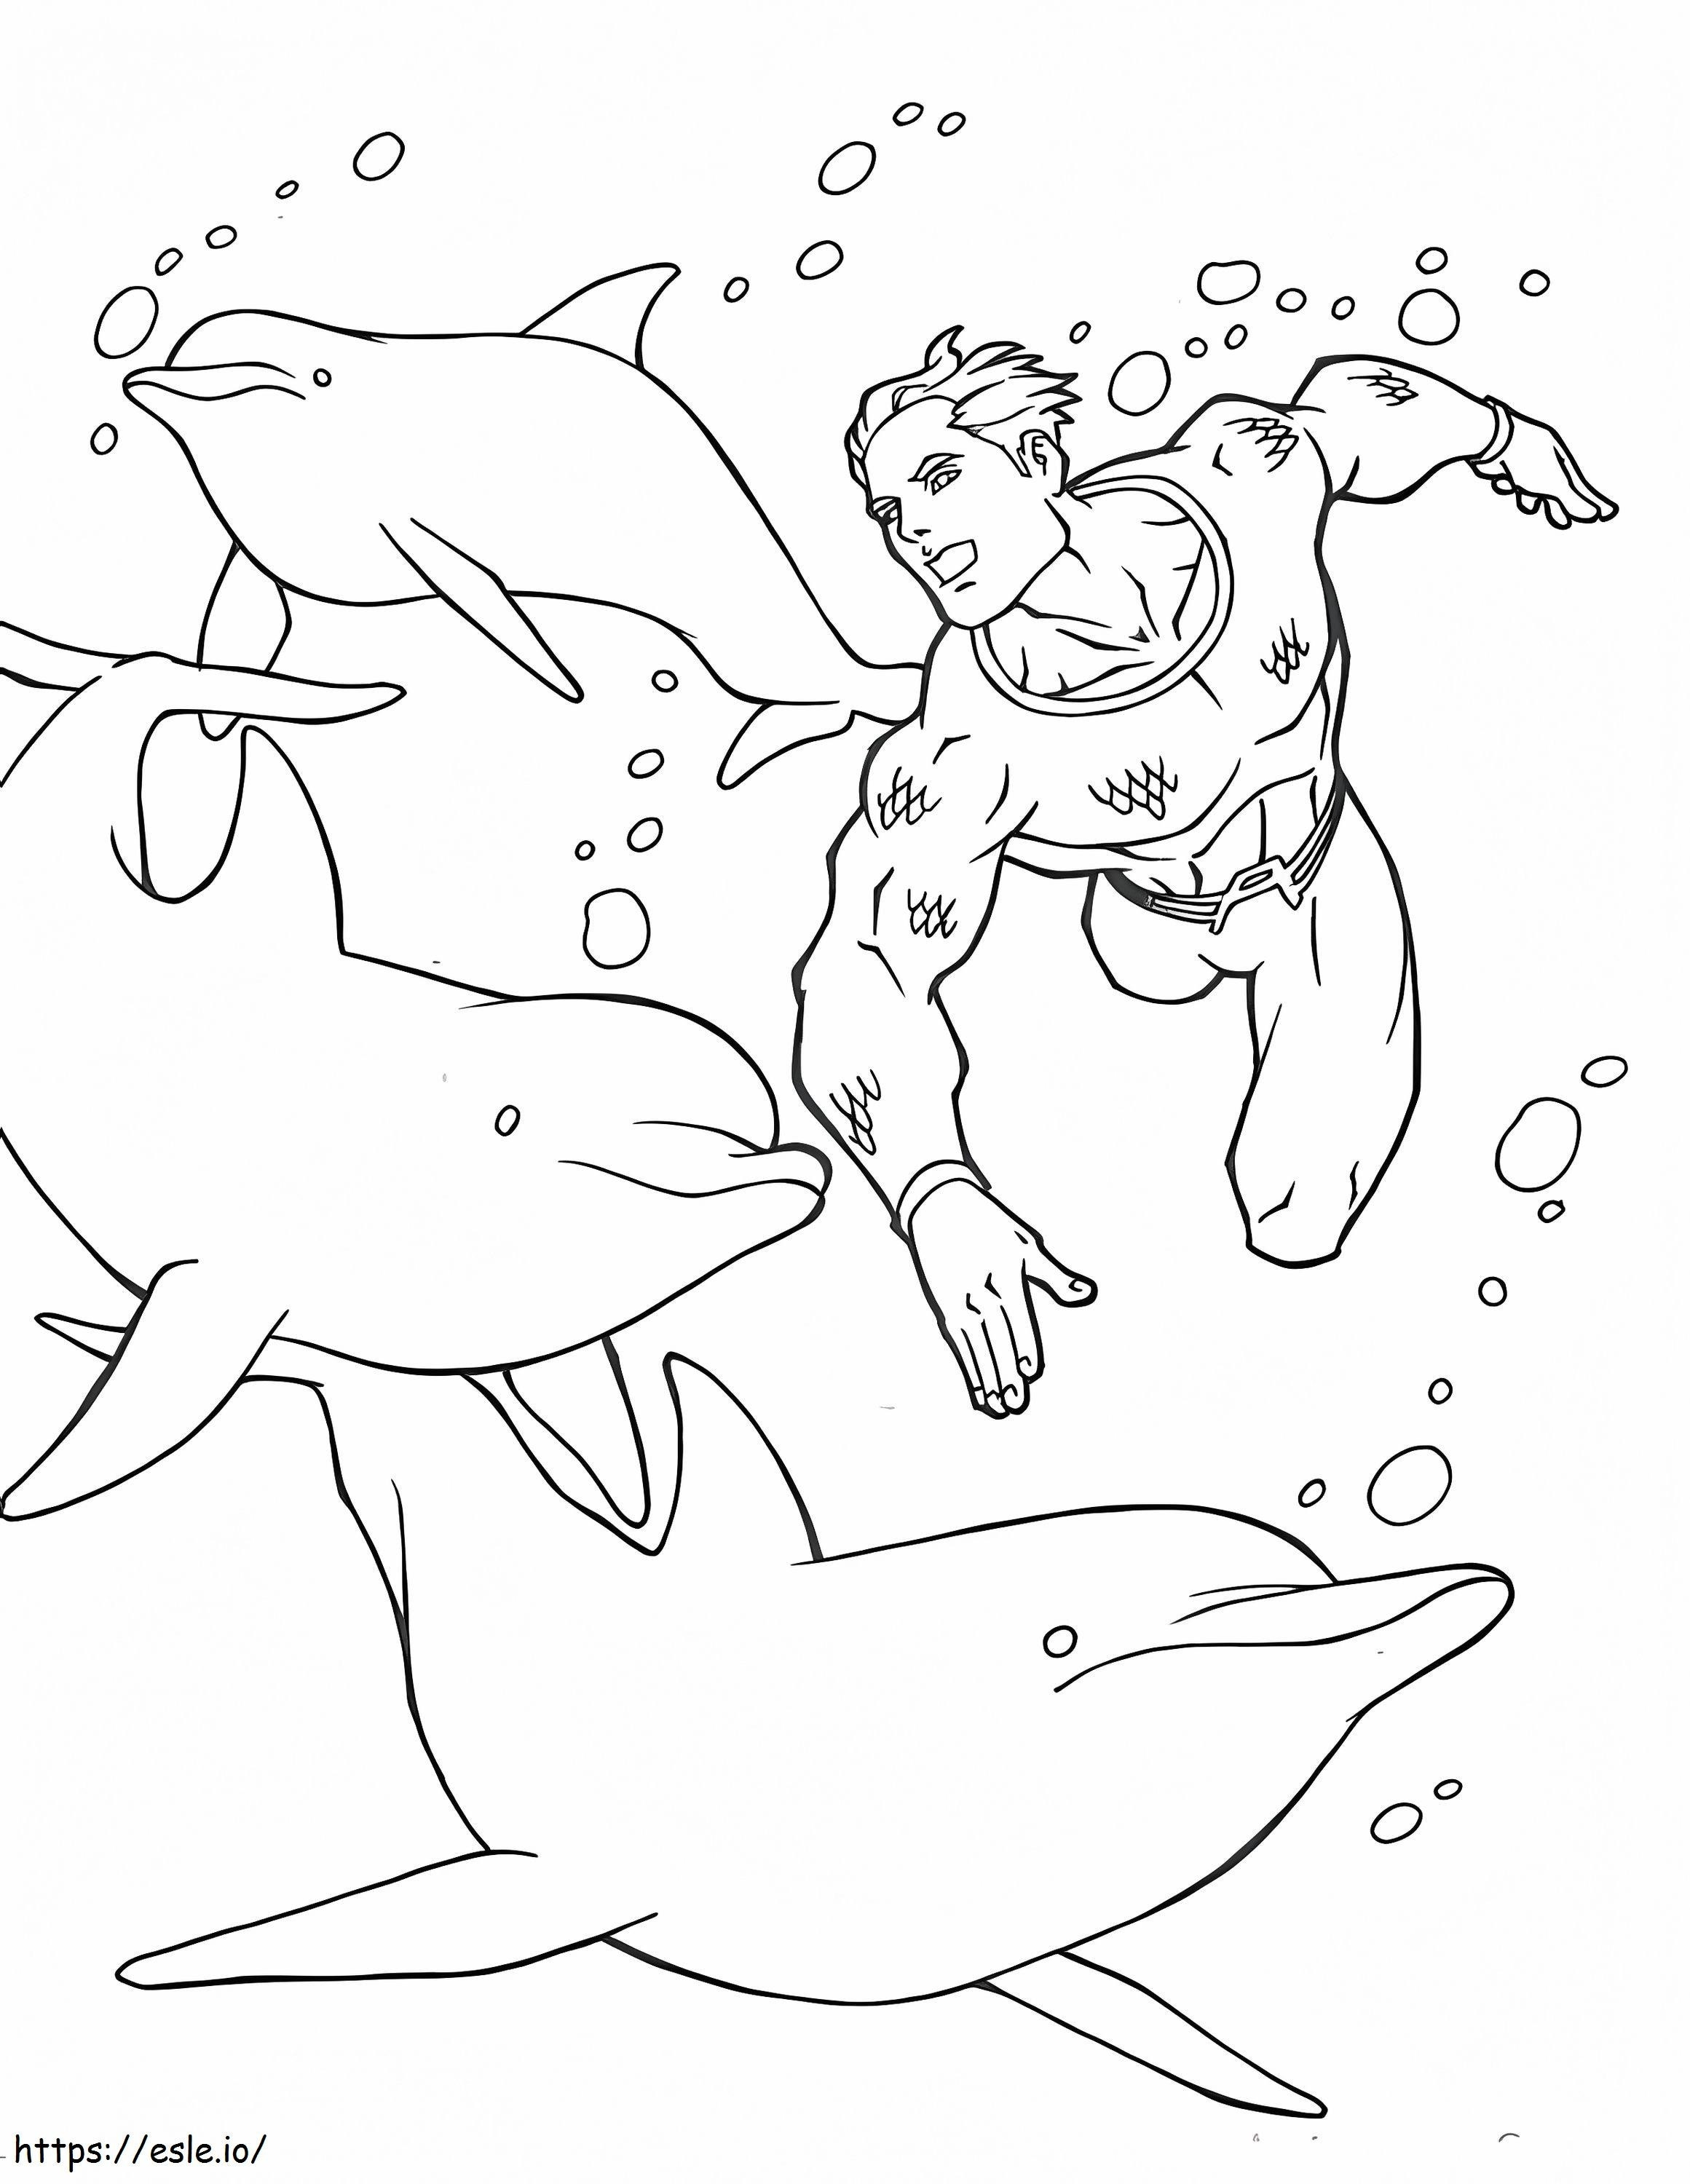 Aquaman con delfines para colorear